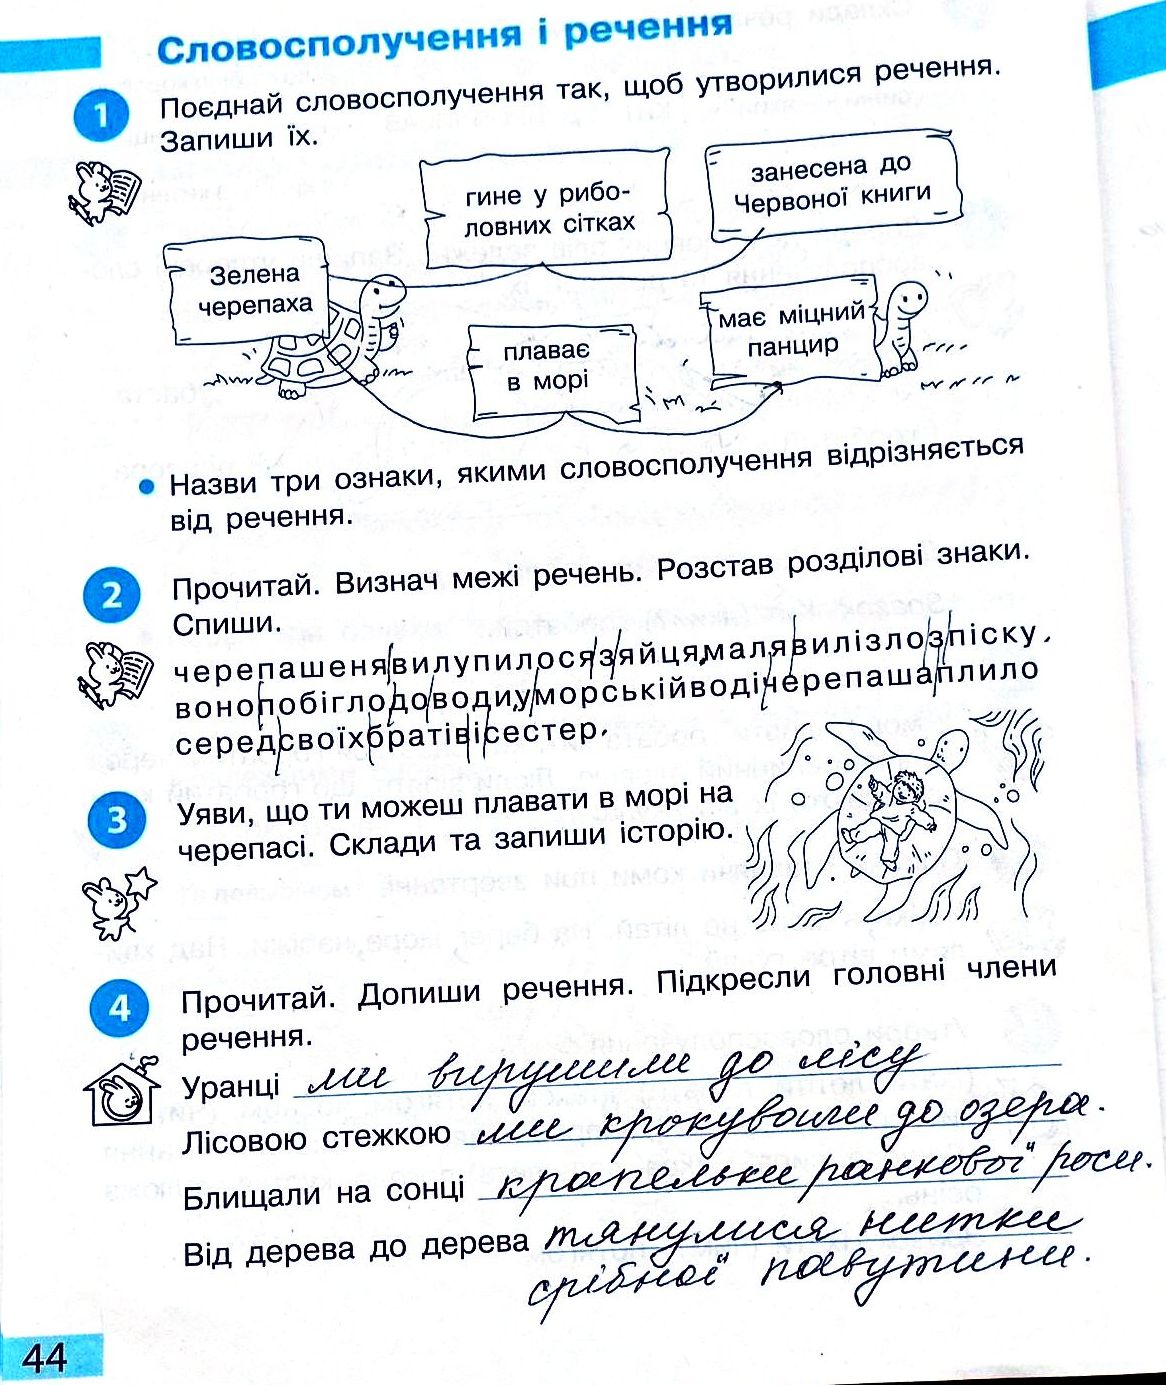 Сторінка 44 частина 2 гдз 3 клас робочий зошит українська мова Большакова